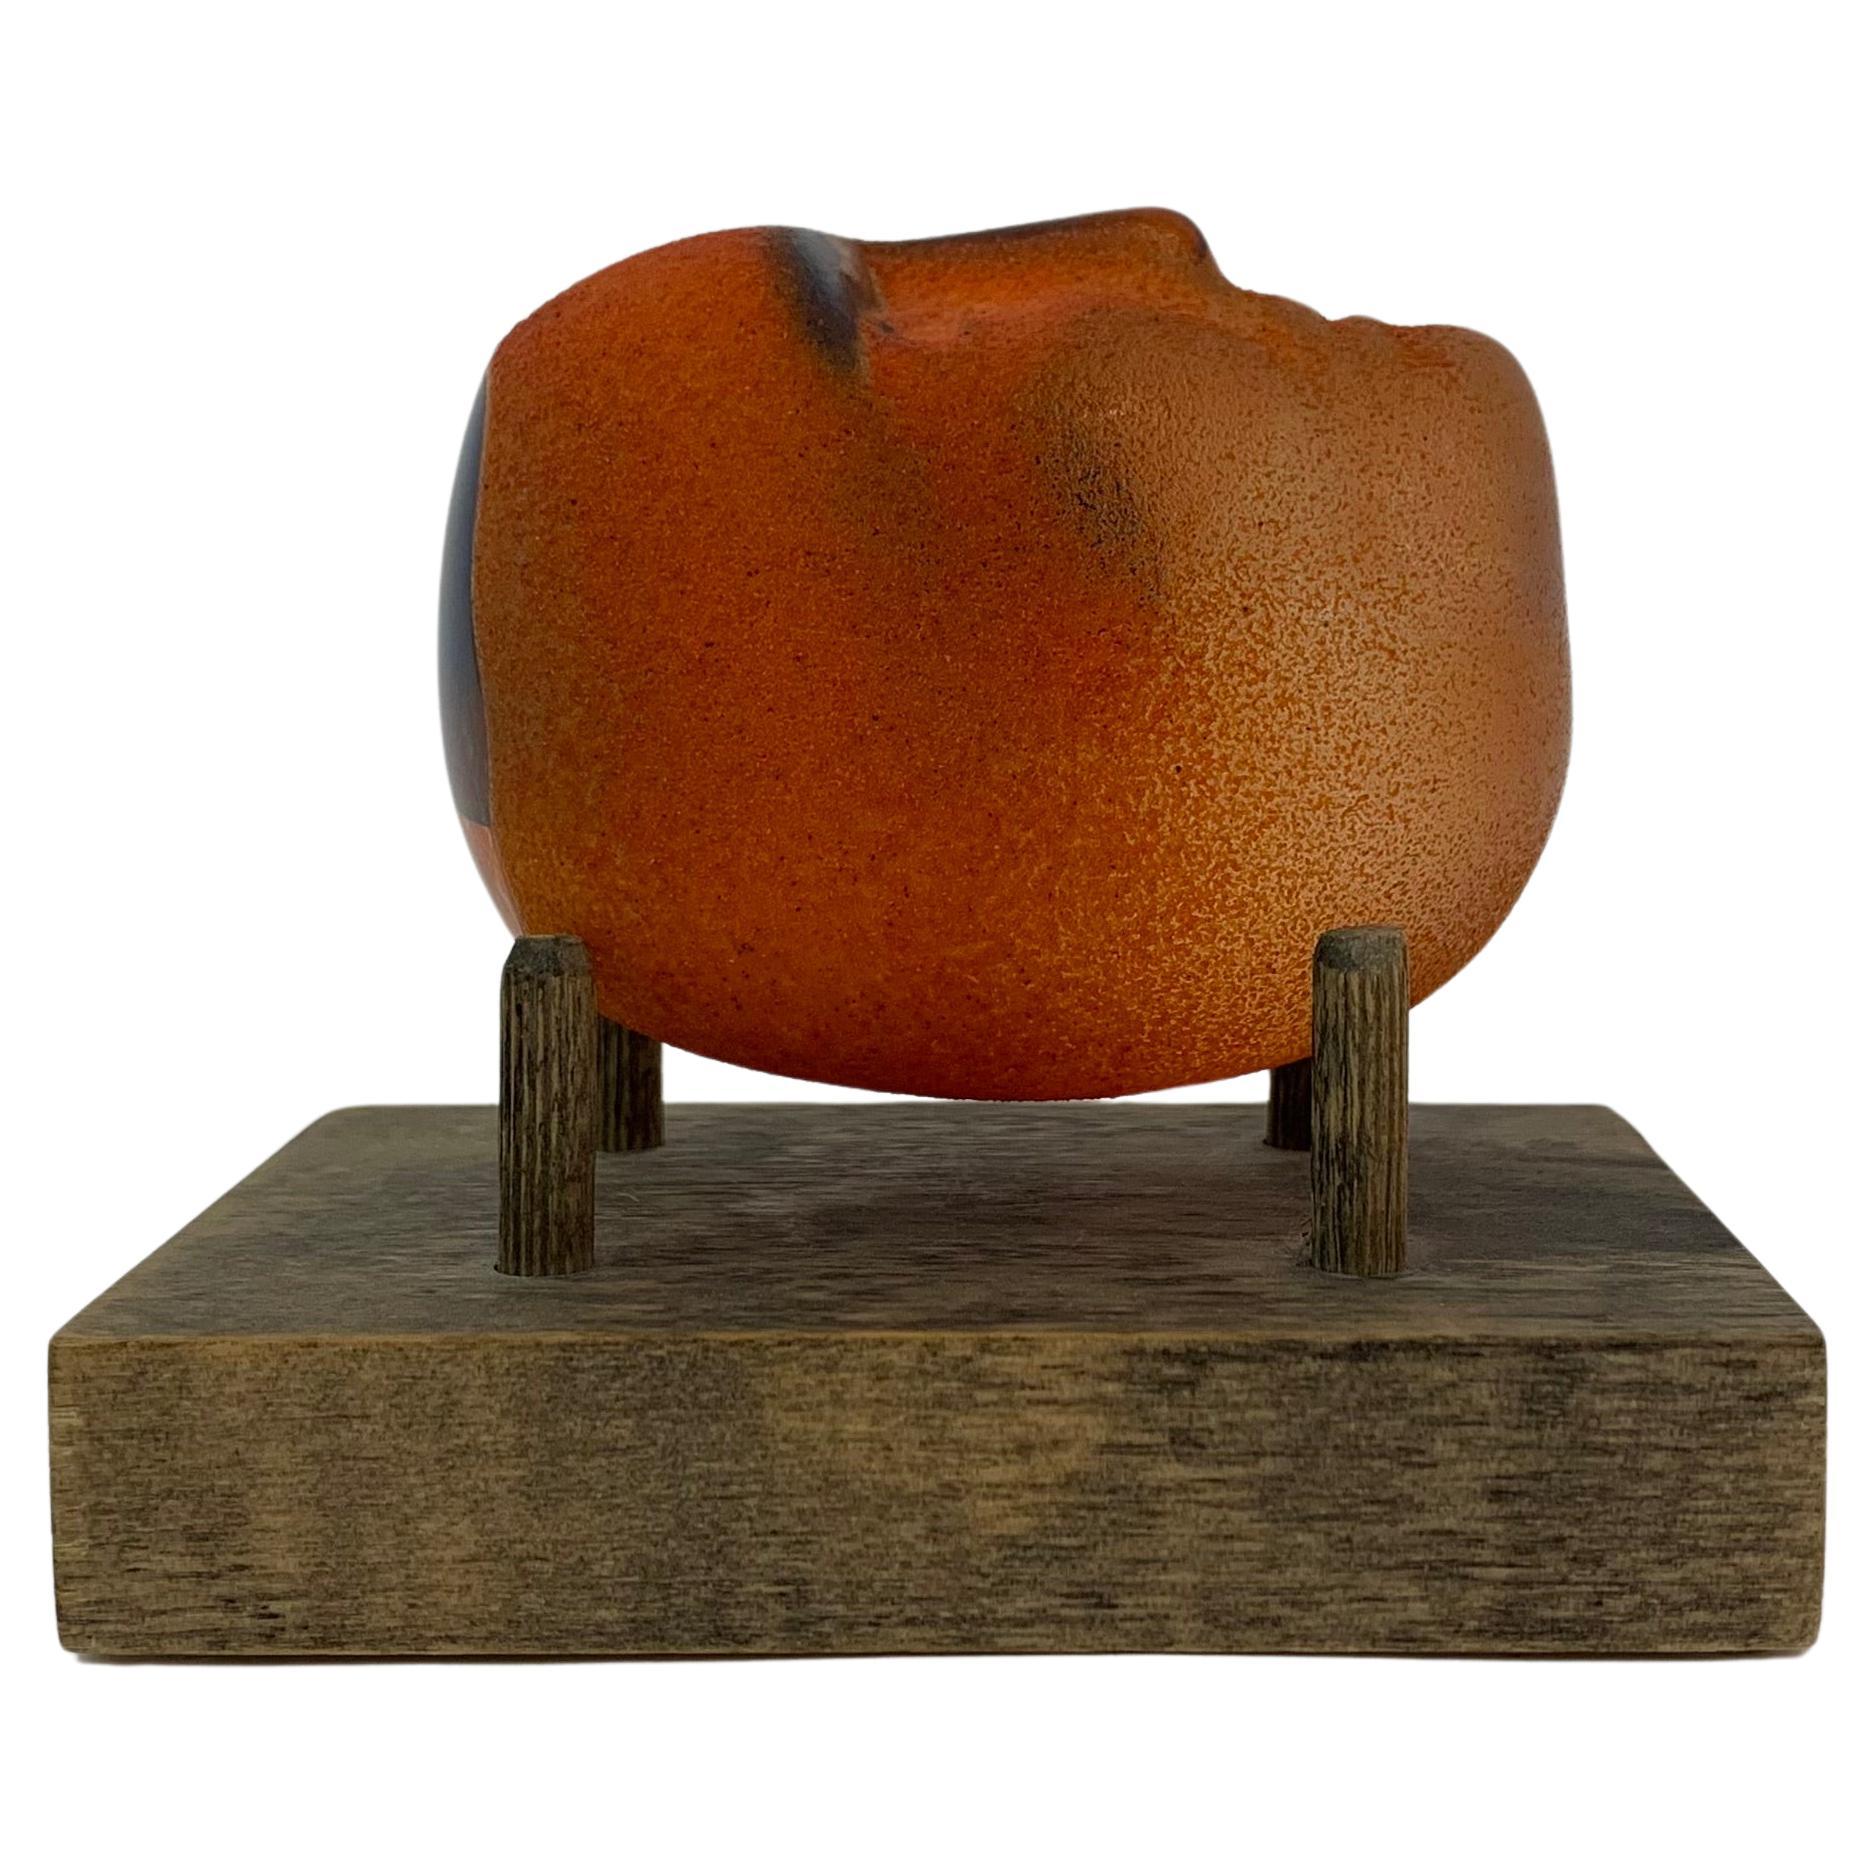 Bertil Vallien für Kosta Boda, Knochenkopf aus orangefarbenem Glas